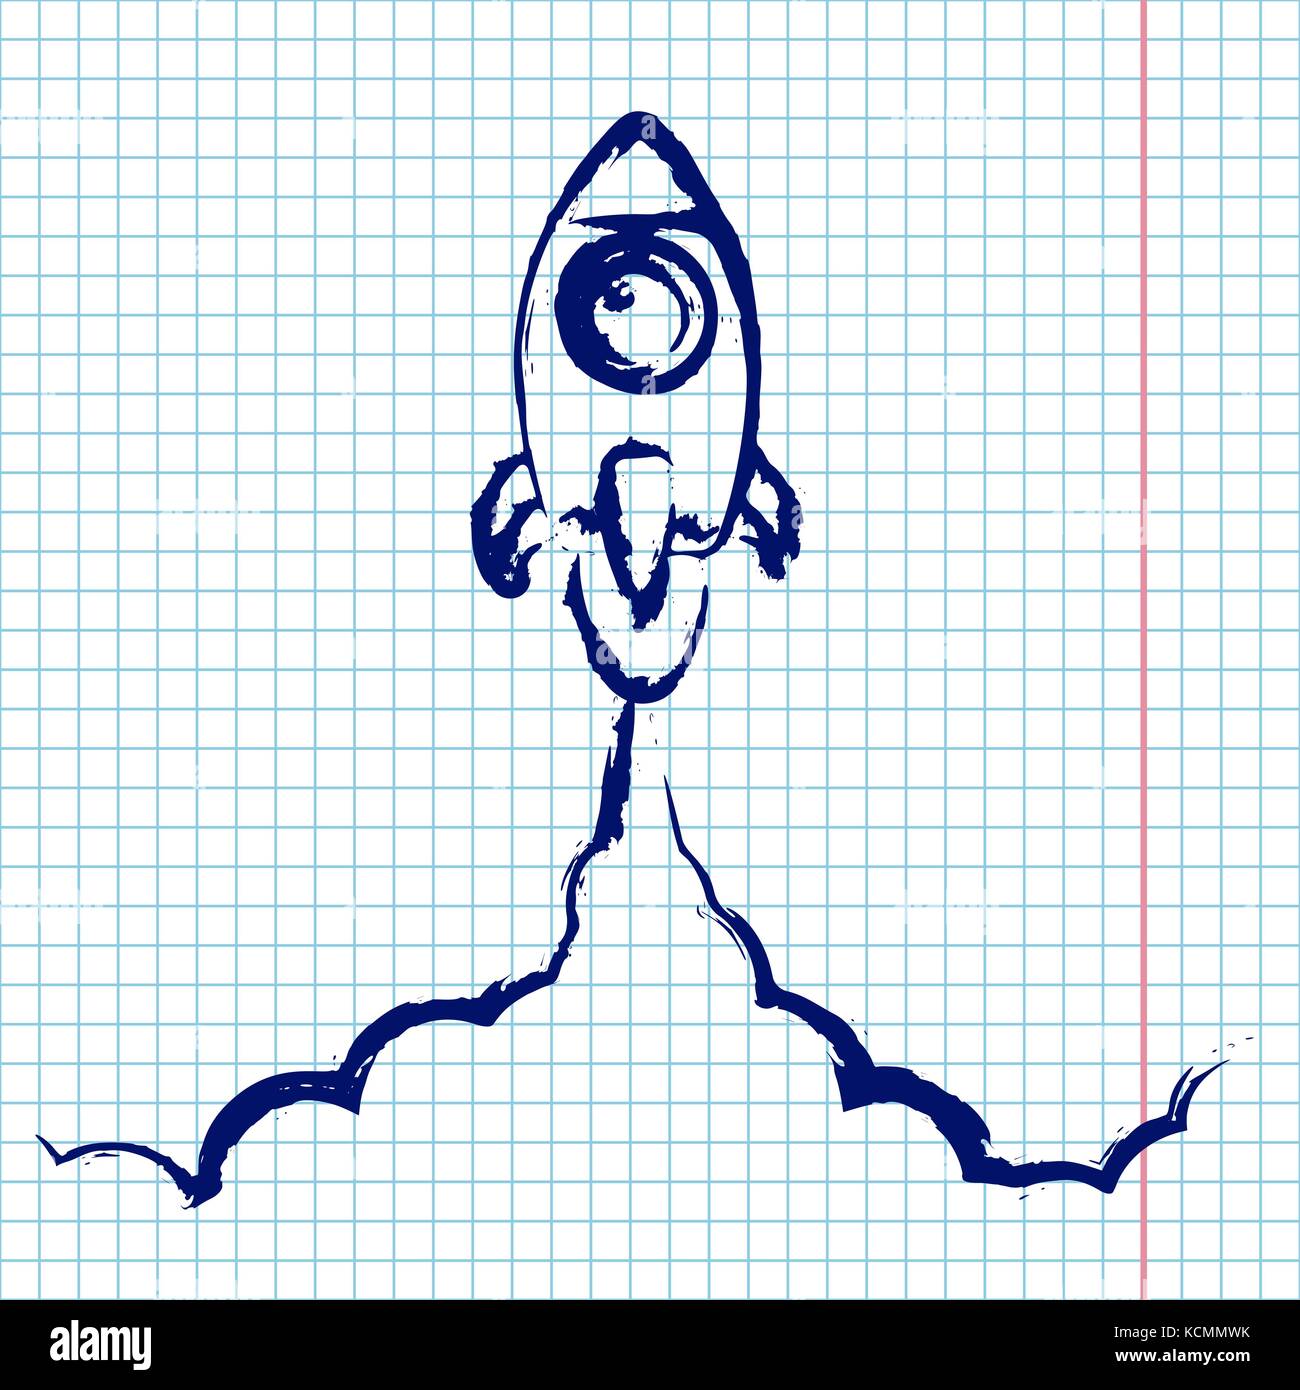 Hand zeichnen Kreide und Tinte Rocket Launch Flachbild-Symbol. Rakete Abbildung mit Wolken, Platz und starten Sie Feuer, doodle Tinte Kunst auf Notebook Papier Hintergrund. zurück zu Schule Abbildung Stock Vektor